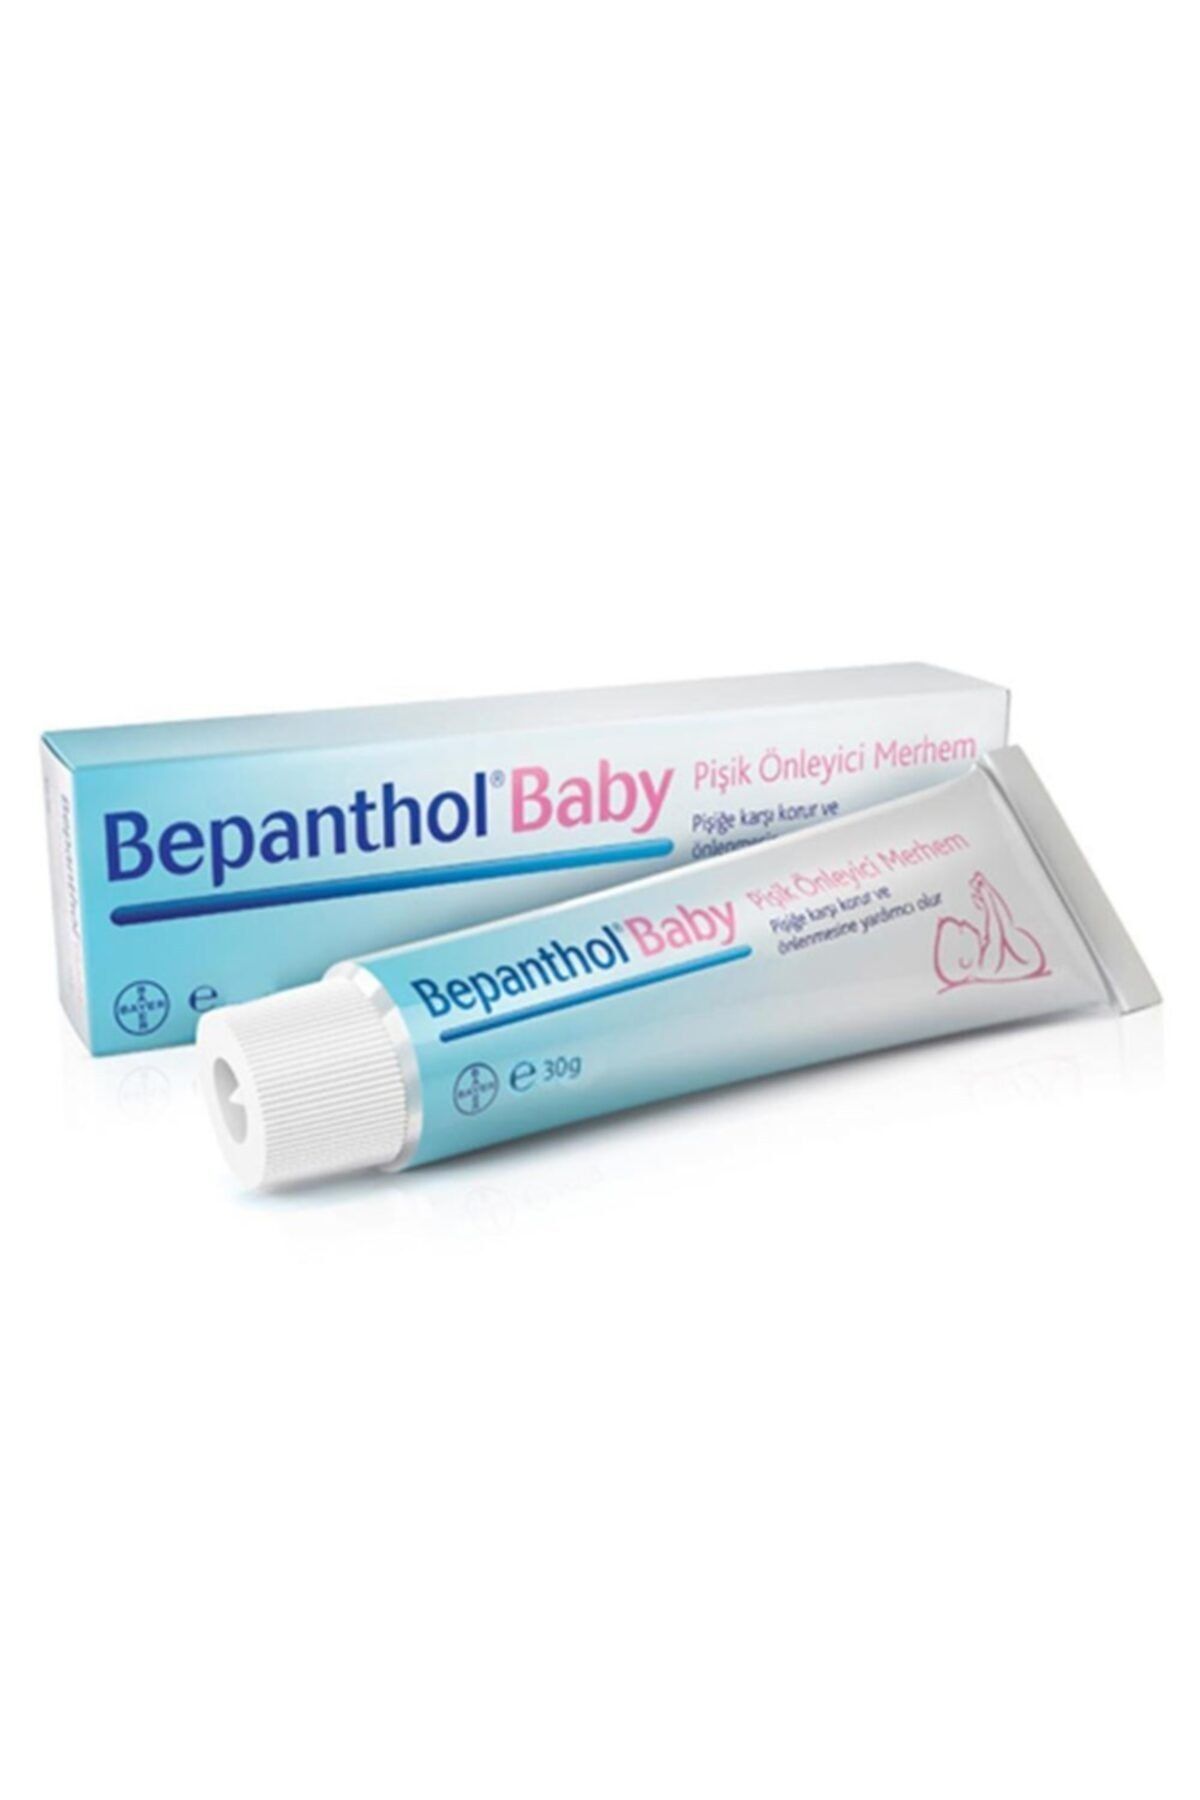 Bepanthol Baby Pişik Önleyici Krem 30 g